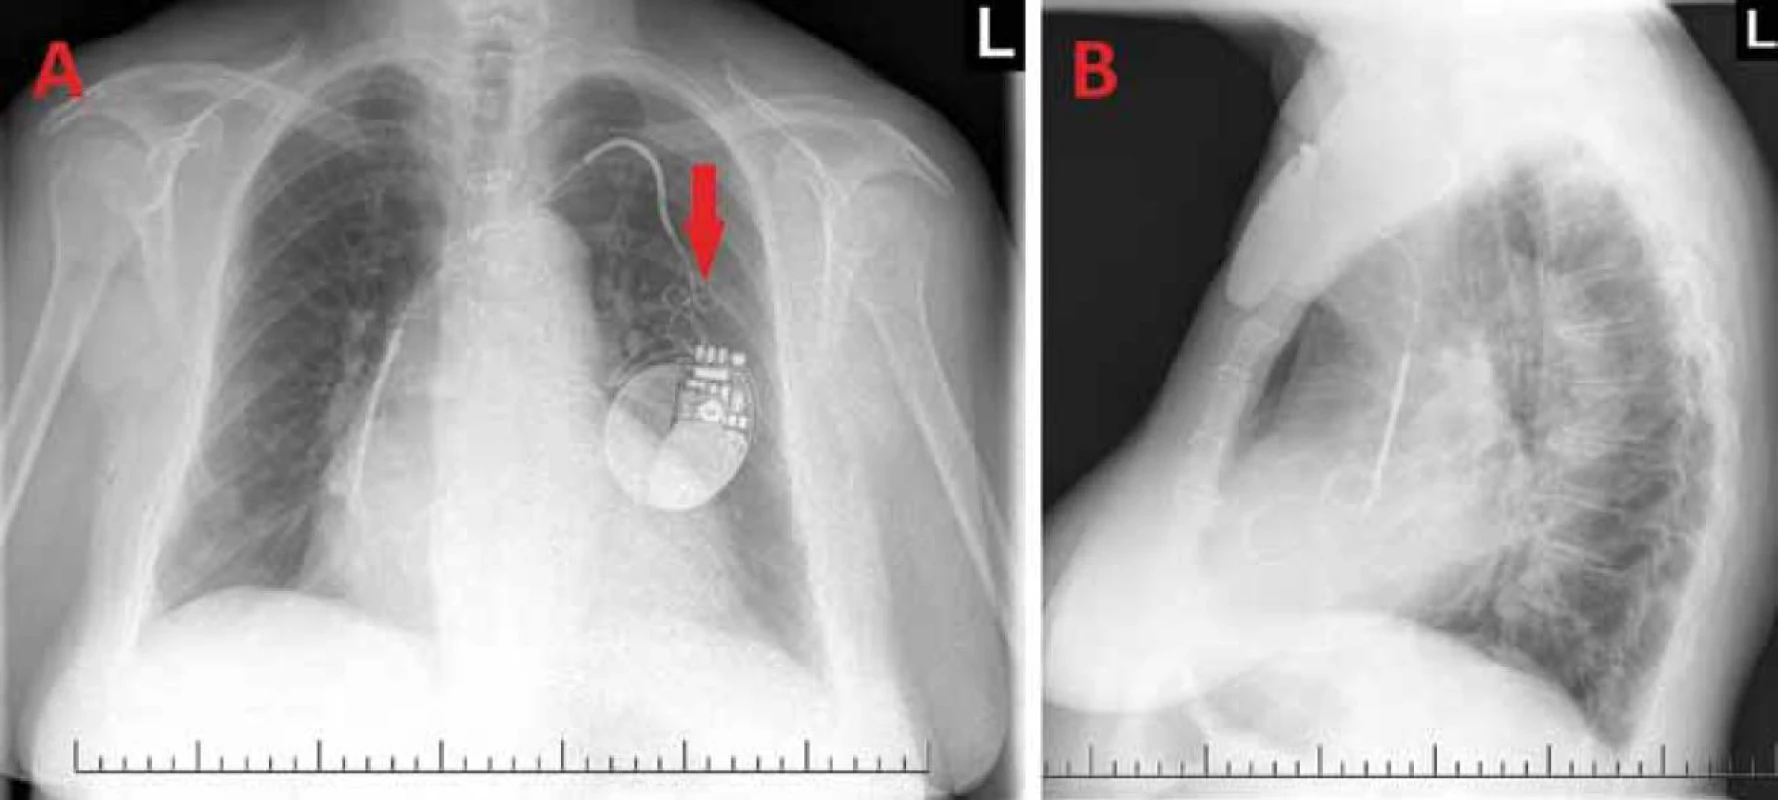 Rentgenový snímek hrudníku – předozadní (A) a levý boční (B): patrná dislokace defibrilační elektrody, jejíž hrot se promítá do oblasti pravé srdeční síně. Šipka ukazuje na konvoluty vytvořené z povytažené elektrody v oblasti kapsy generátoru ICD.